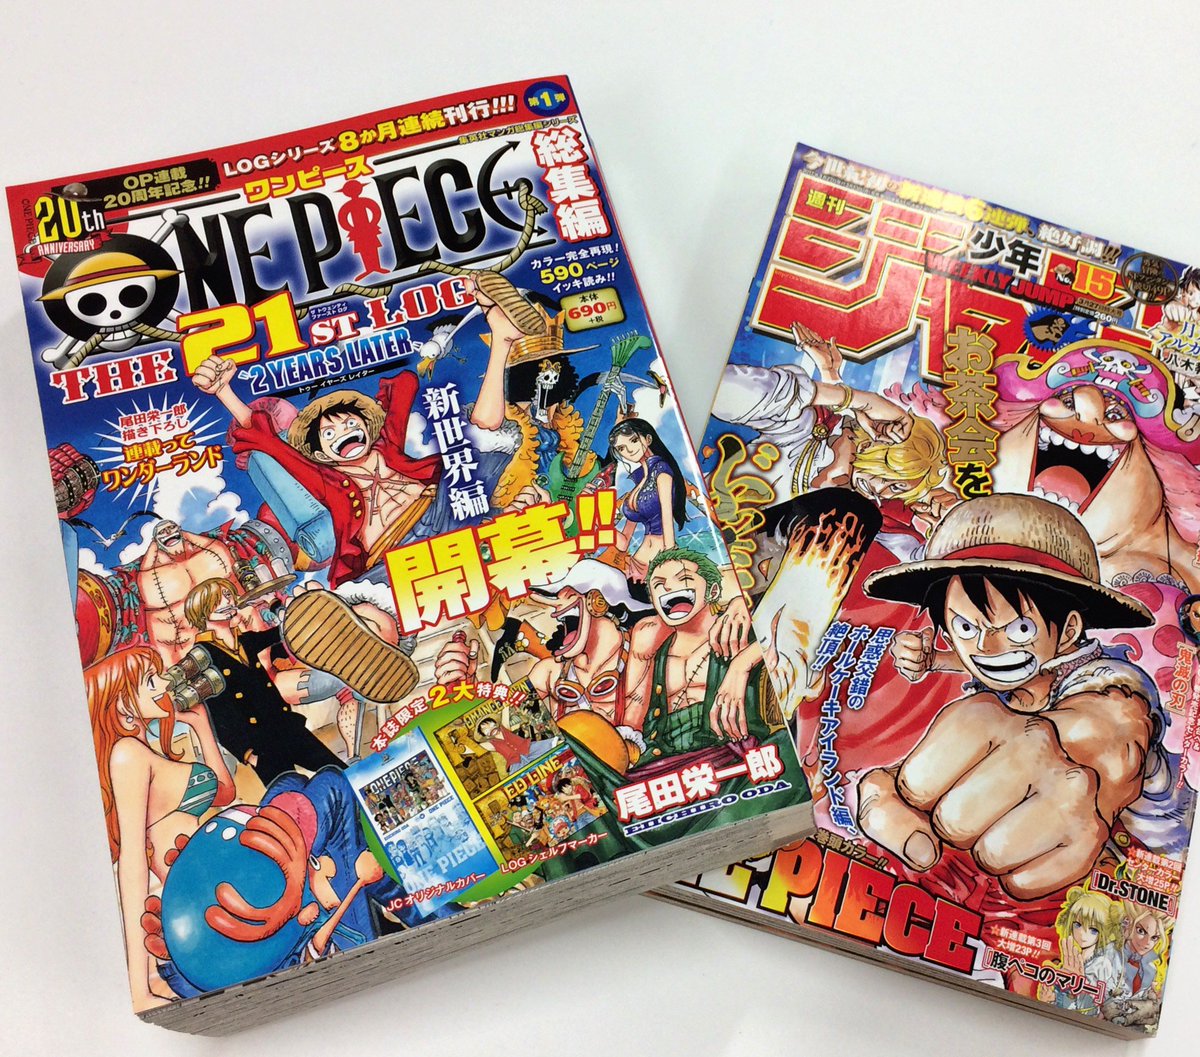 One Piece スタッフ 公式 Official まずはこれ ログシリーズの続きが出ますよ あ し た ジャンプサイズでone Pieceが読める という デカイのイイよね 今回 尾田っちがかなりぶっちゃけるコーナーもあります これは必見 ビビ